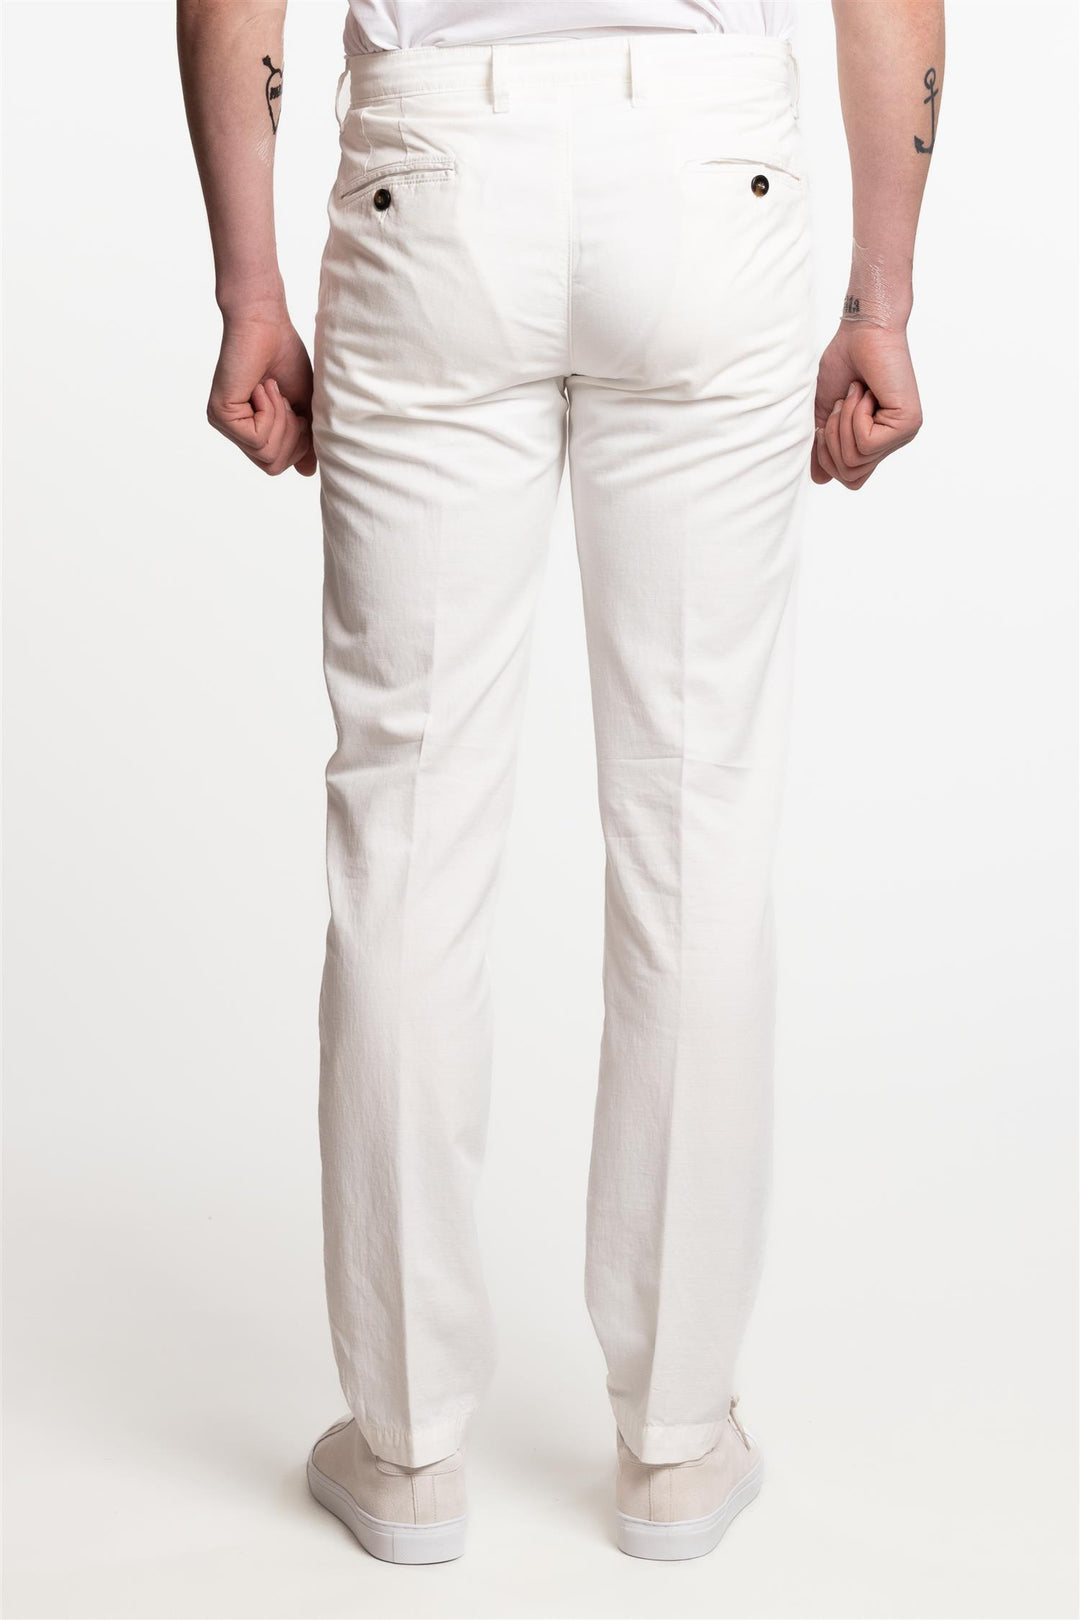 Cagliari Cotton/Stretch Pant White